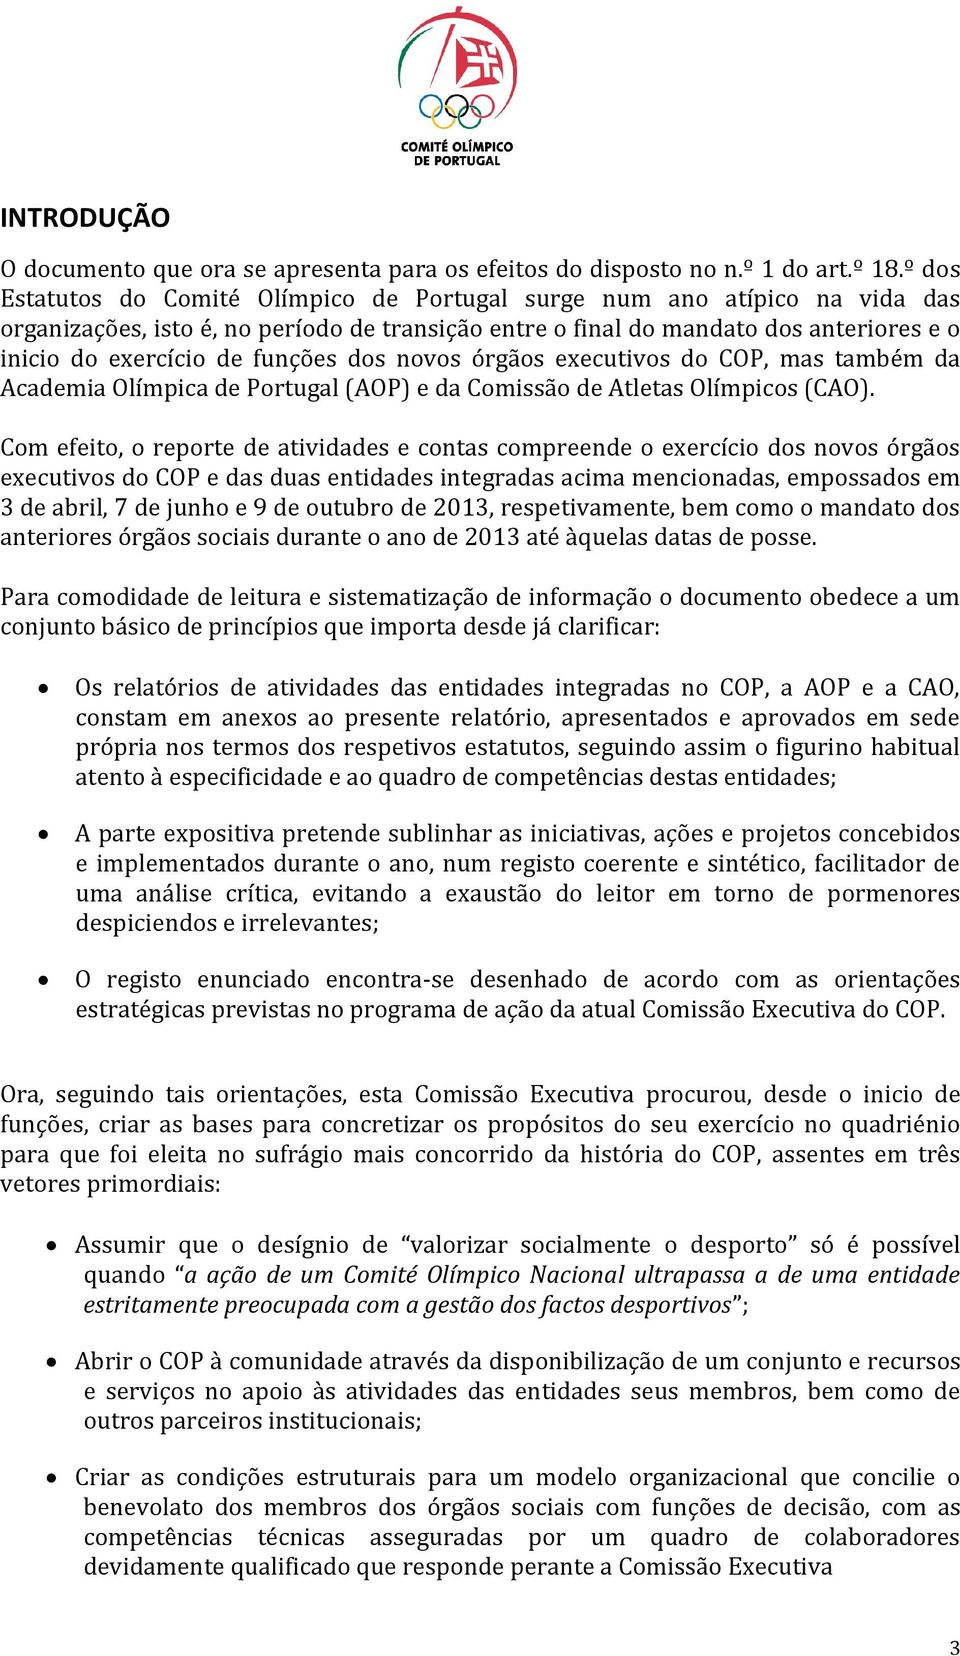 funções dos novos órgãos executivos do COP, mas também da Academia Olímpica de Portugal (AOP) e da Comissão de Atletas Olímpicos (CAO).